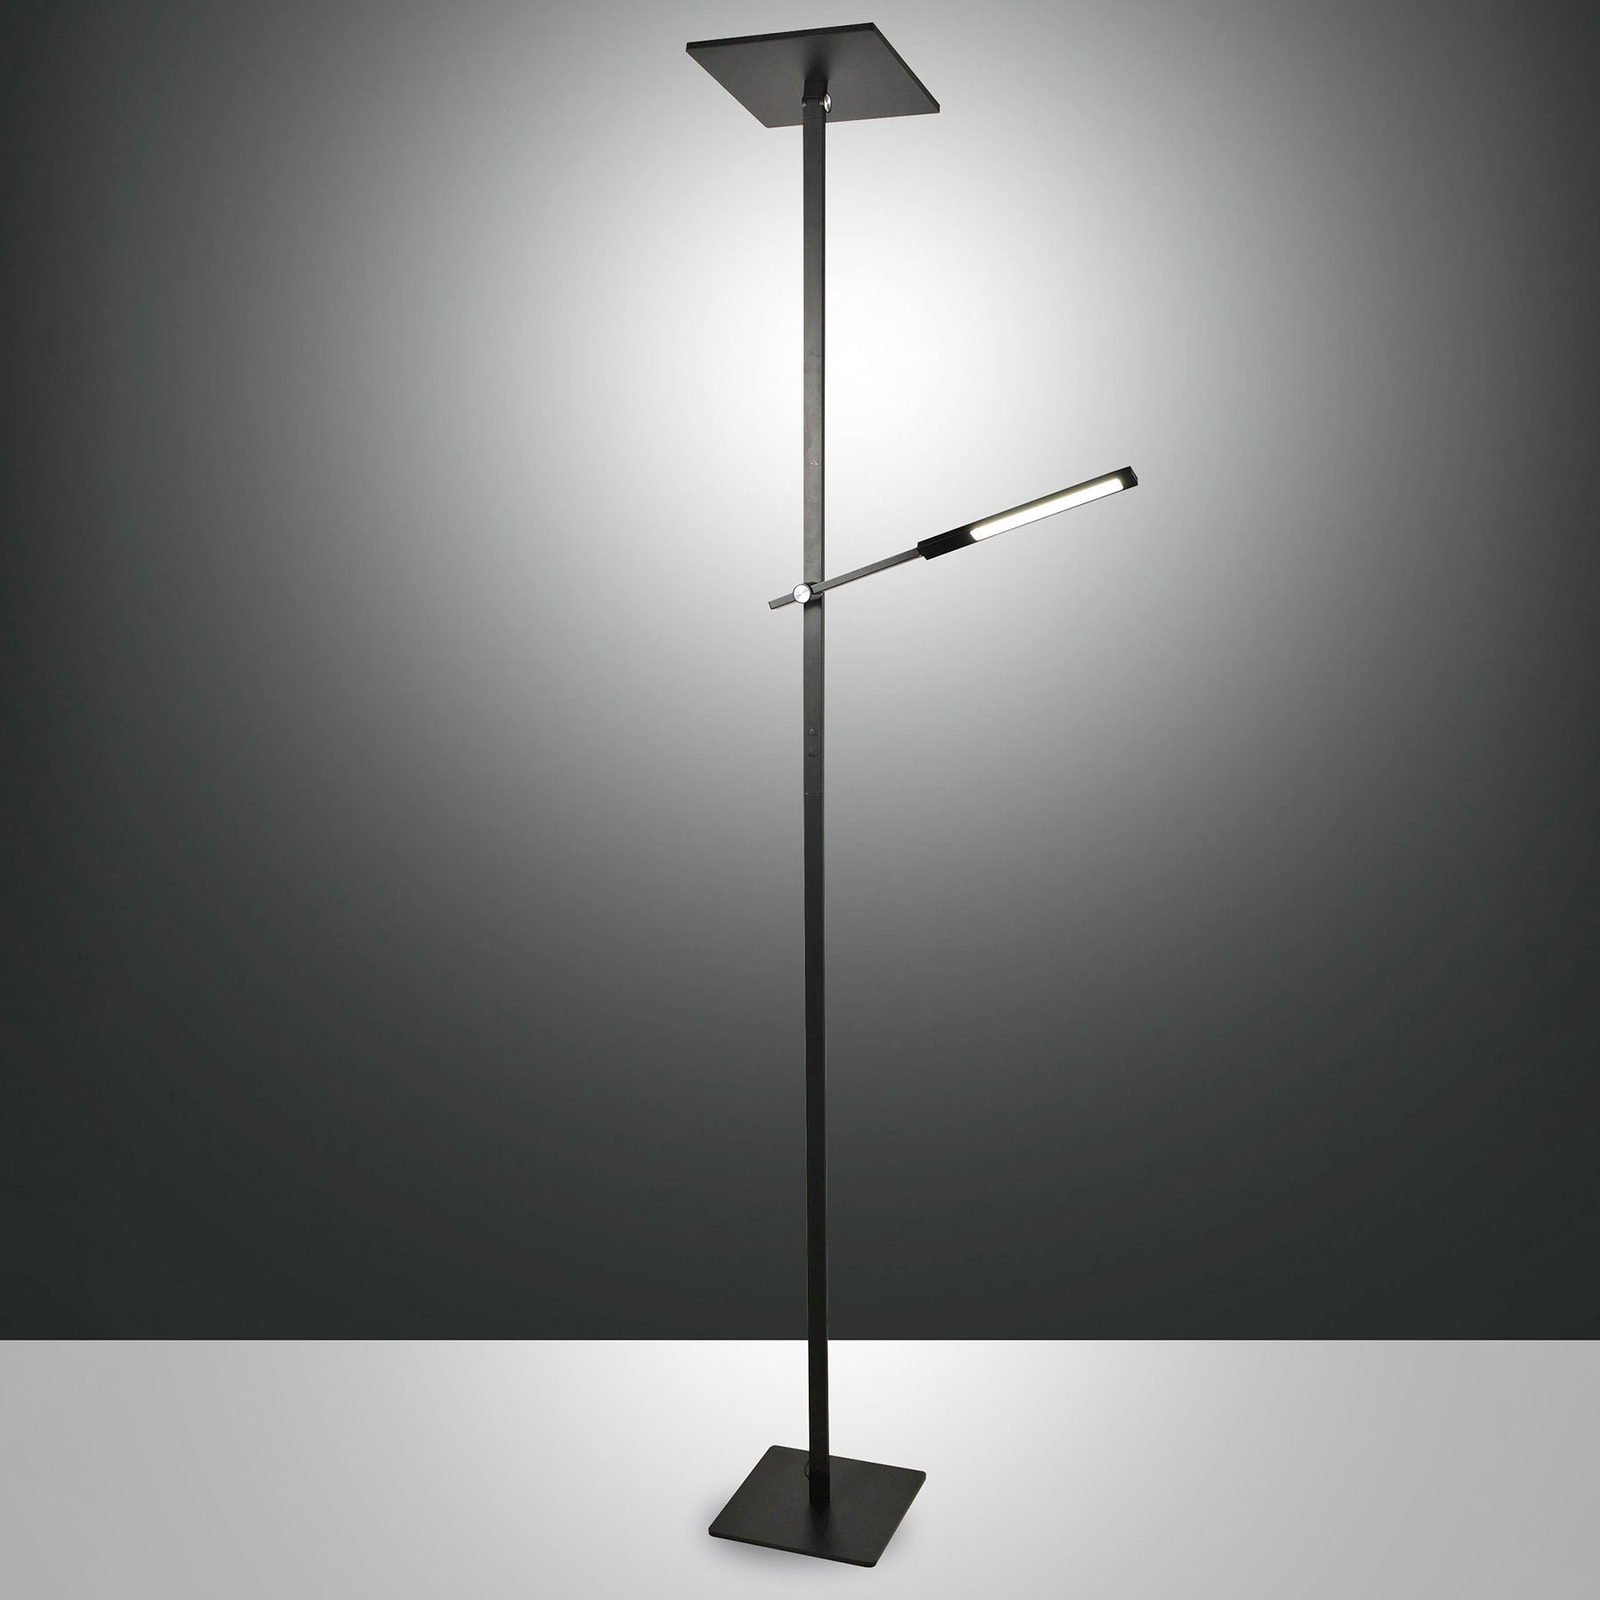 LED vloerlamp Ideal met leesarm, zwart